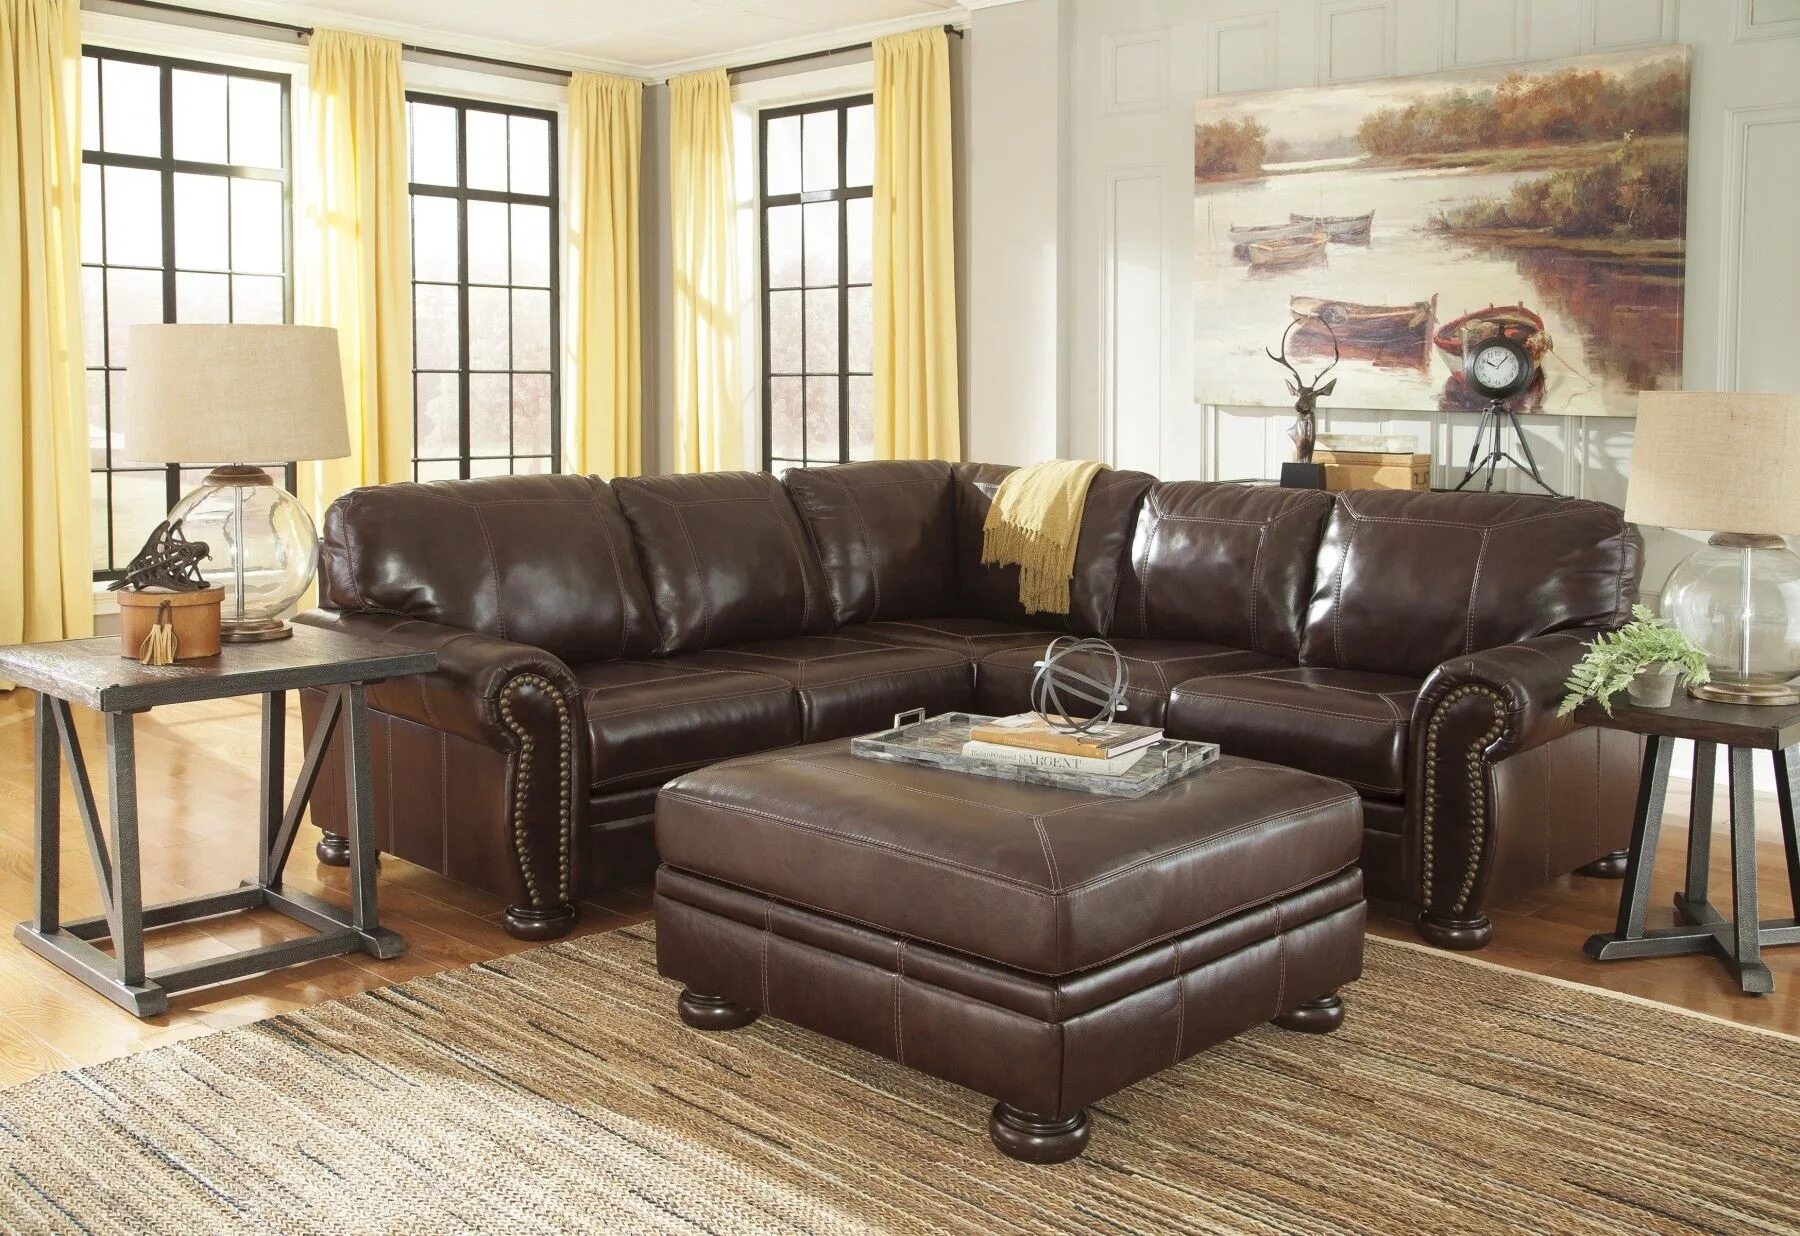 Мягкая мебель. Интерьер квартиры с кожаной мебелью. Кожаный диван в интерьере гостиной. Мягкая мебель натуральная кожа классика.